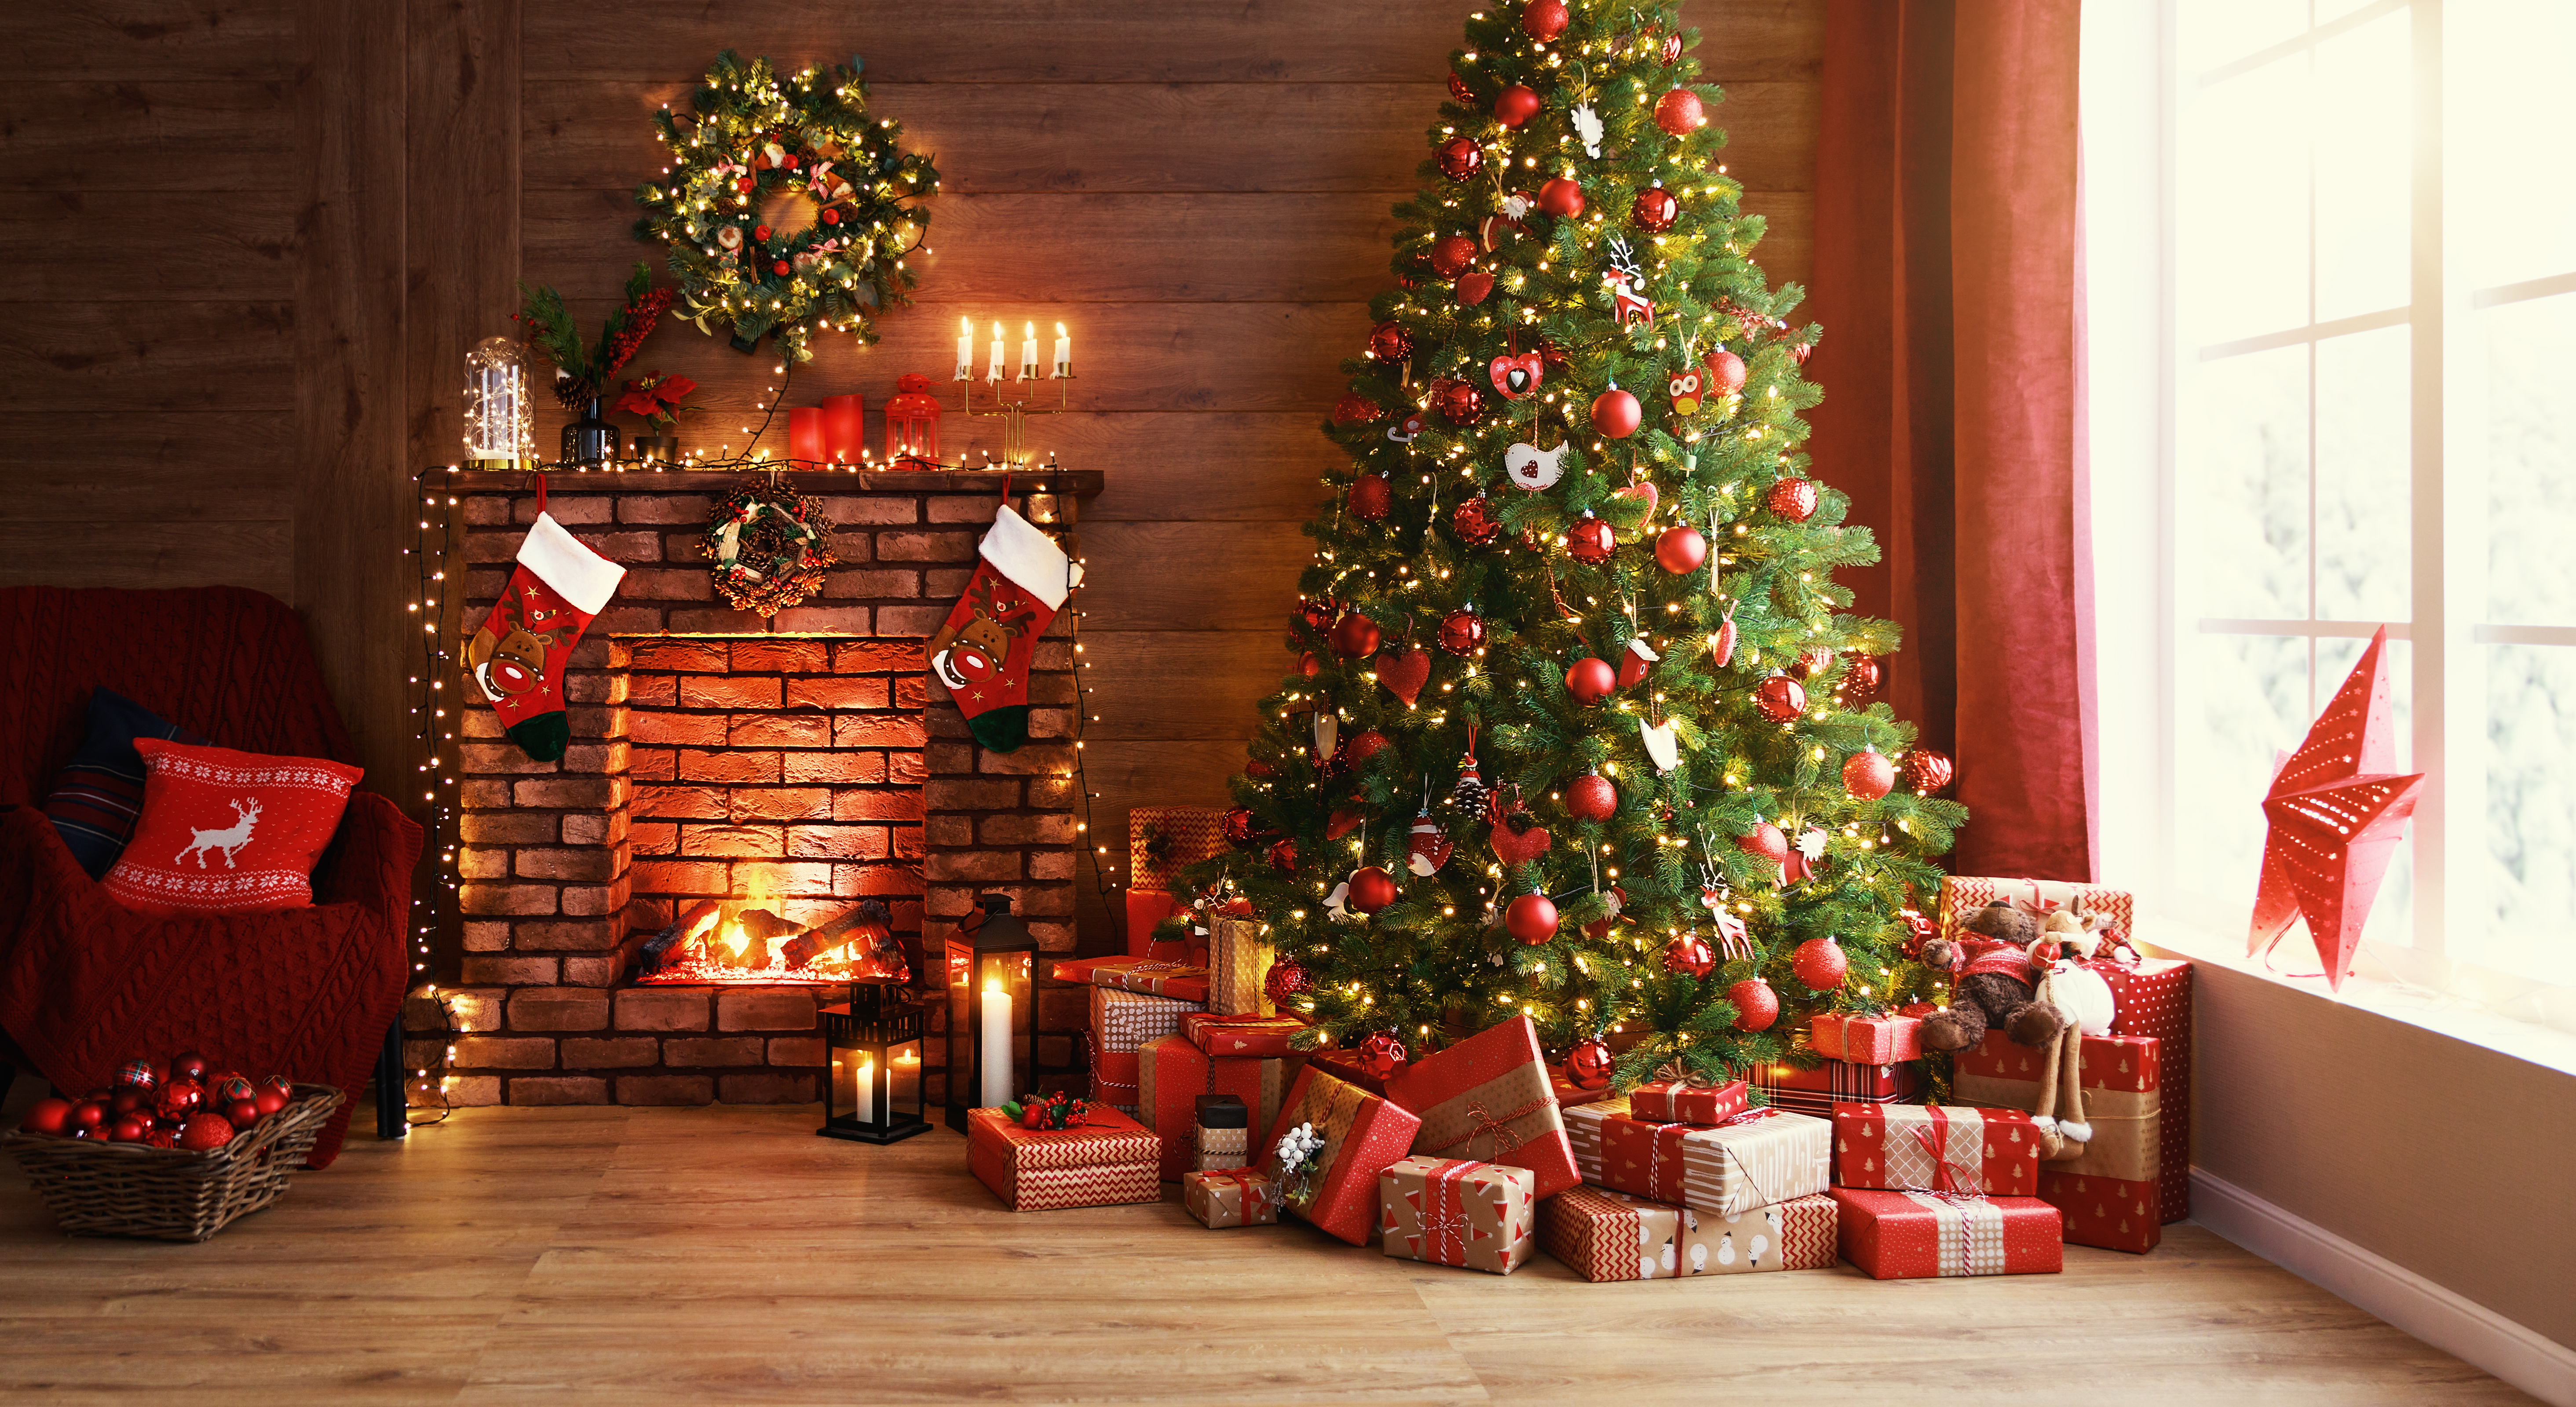 Geschenkkartons unter einem Weihnachtsbaum | Quelle: Shutterstock